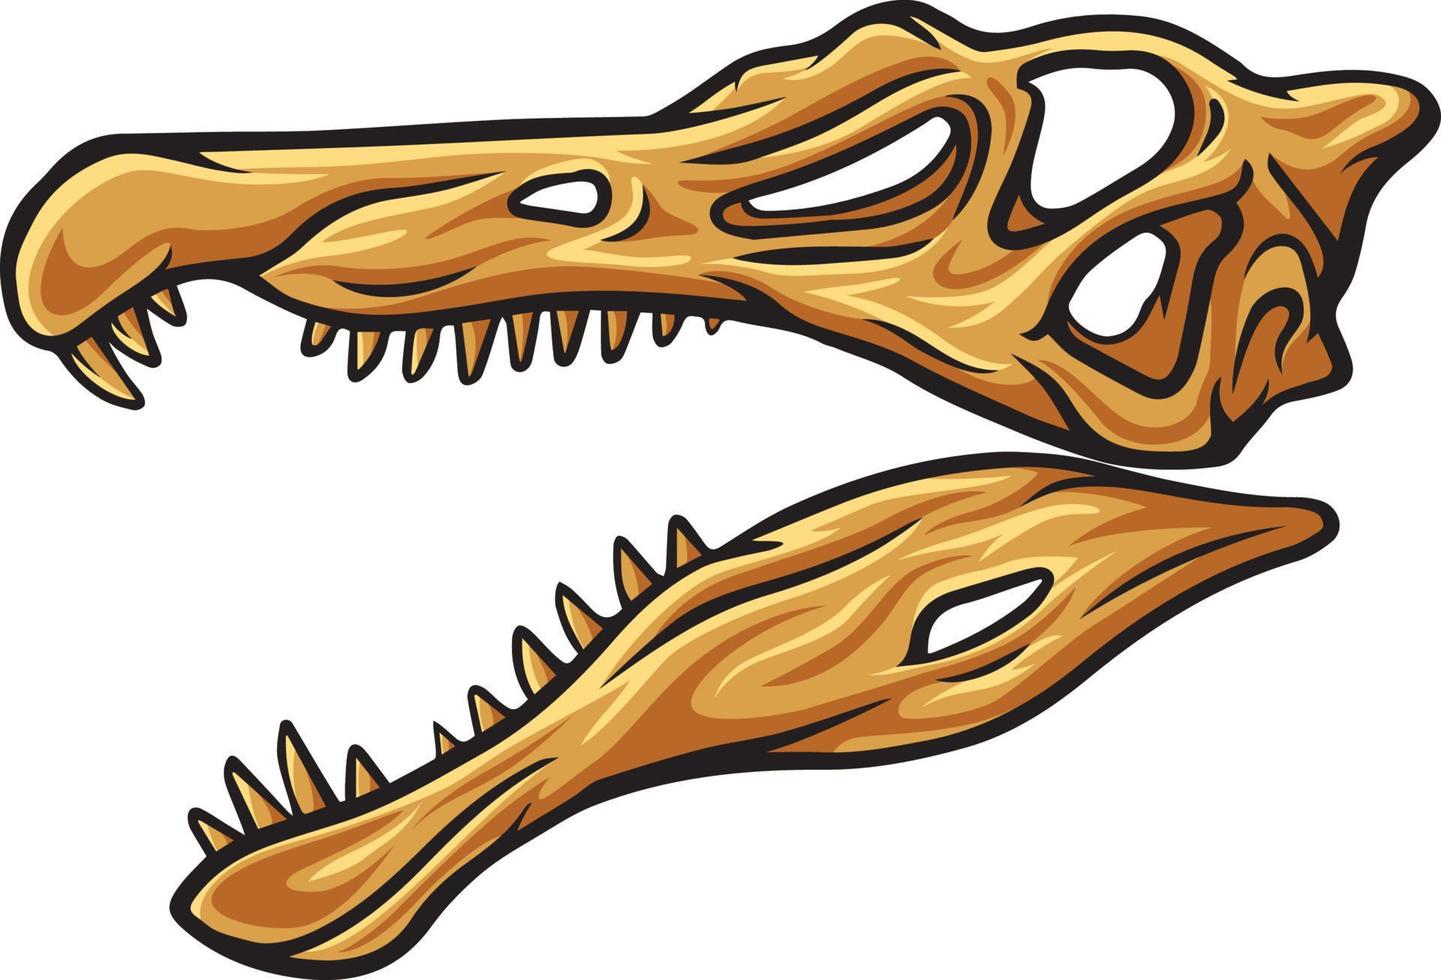 espinossauro dinossauro crânio fóssil ilustração vetor